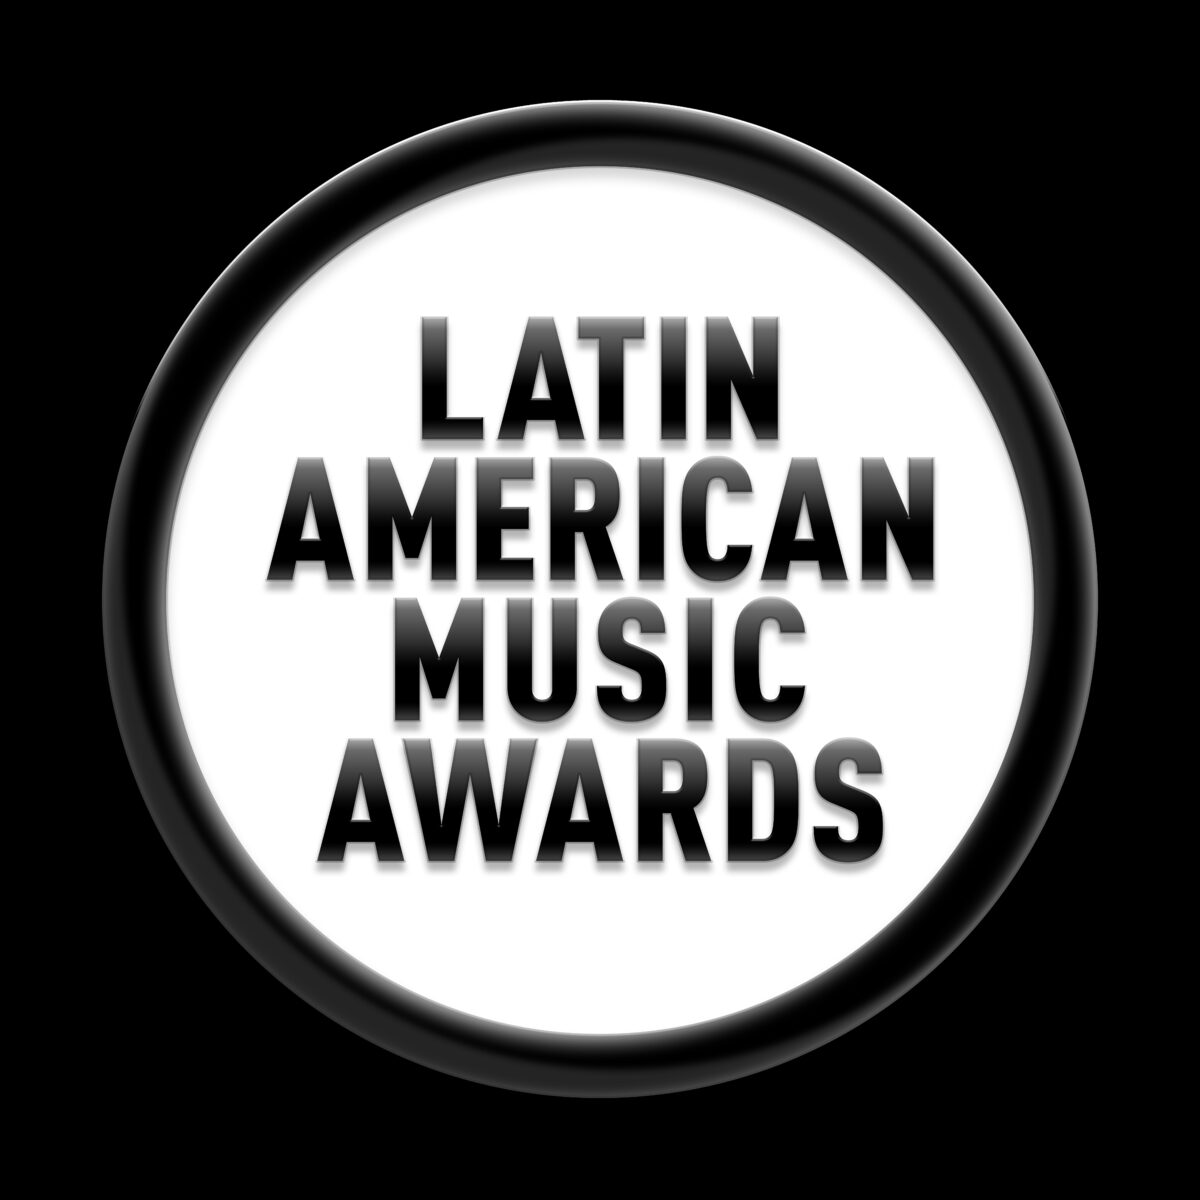 2022 Latin America Music Awards to air on Telemundo